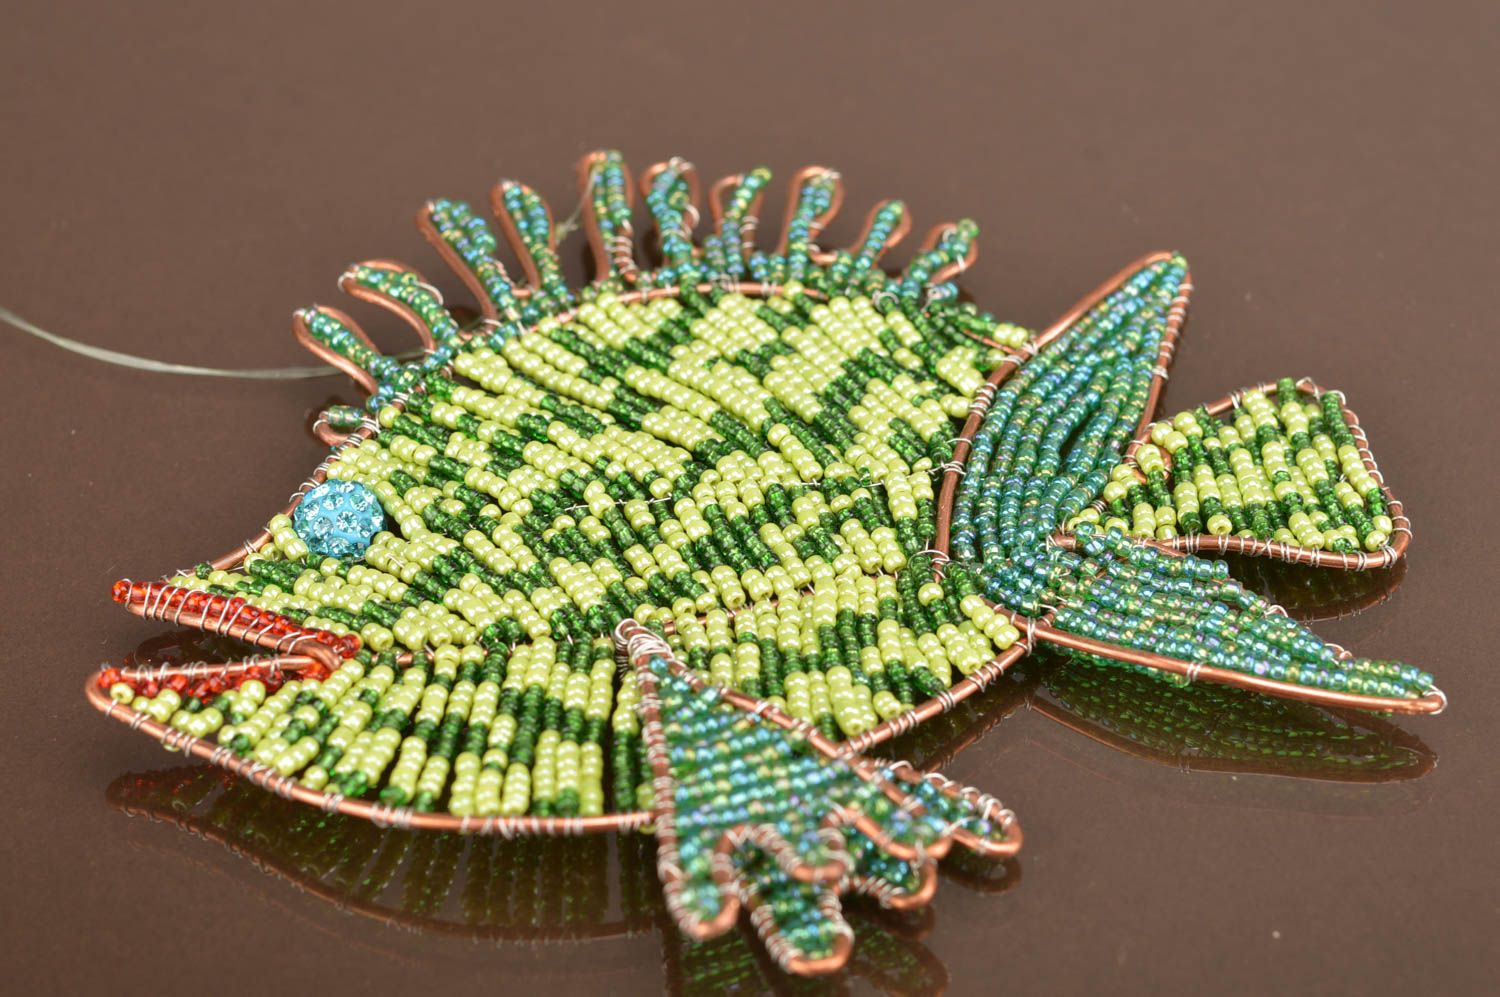 Интерьерная подвеска из бисера рыбка зеленая красивая небольшая ручной работы фото 2